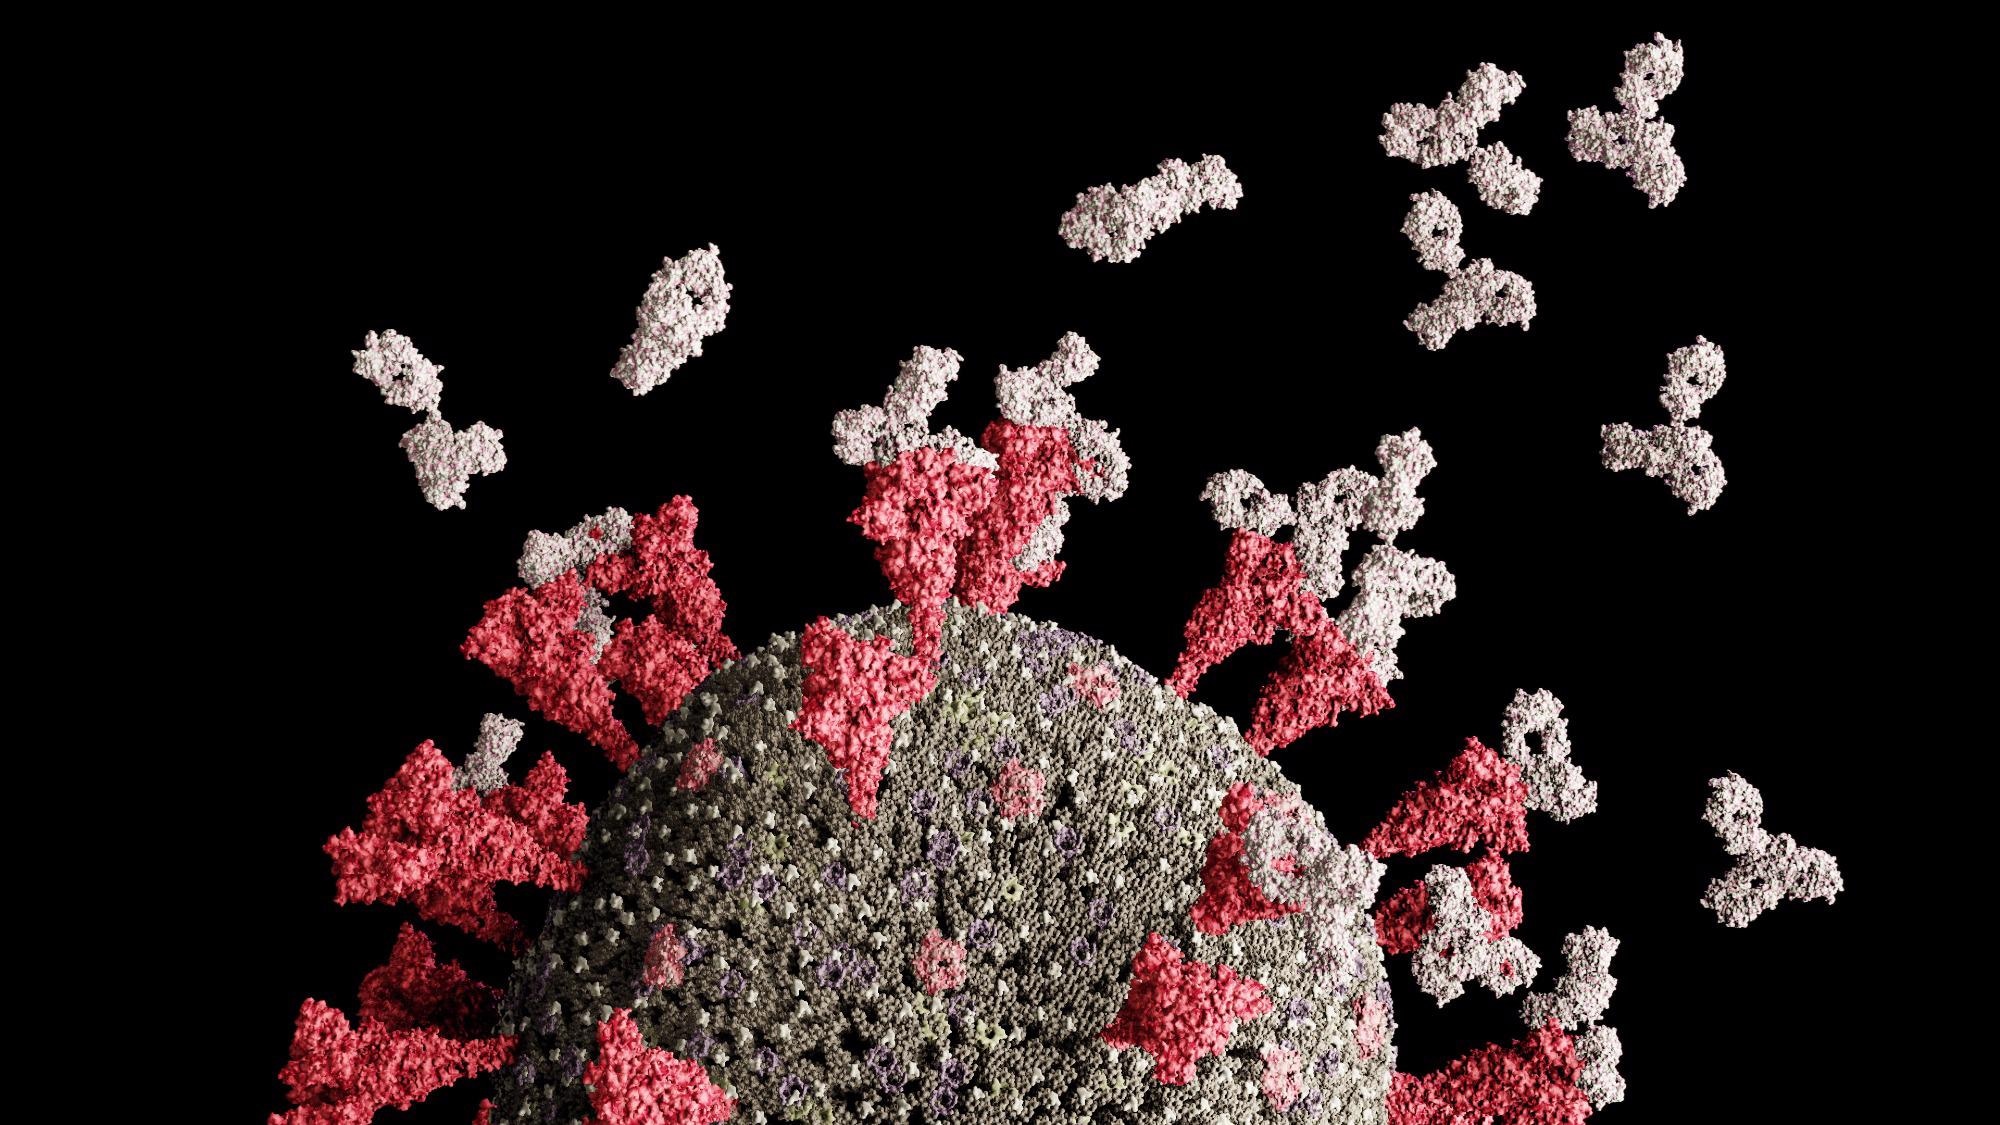 Studi: Antibodi super-penetralisir baru UT28K mampu melindungi terhadap infeksi dari berbagai varian SARS-CoV-2.  Kredit Gambar: Leonid Altman/Shutterstock